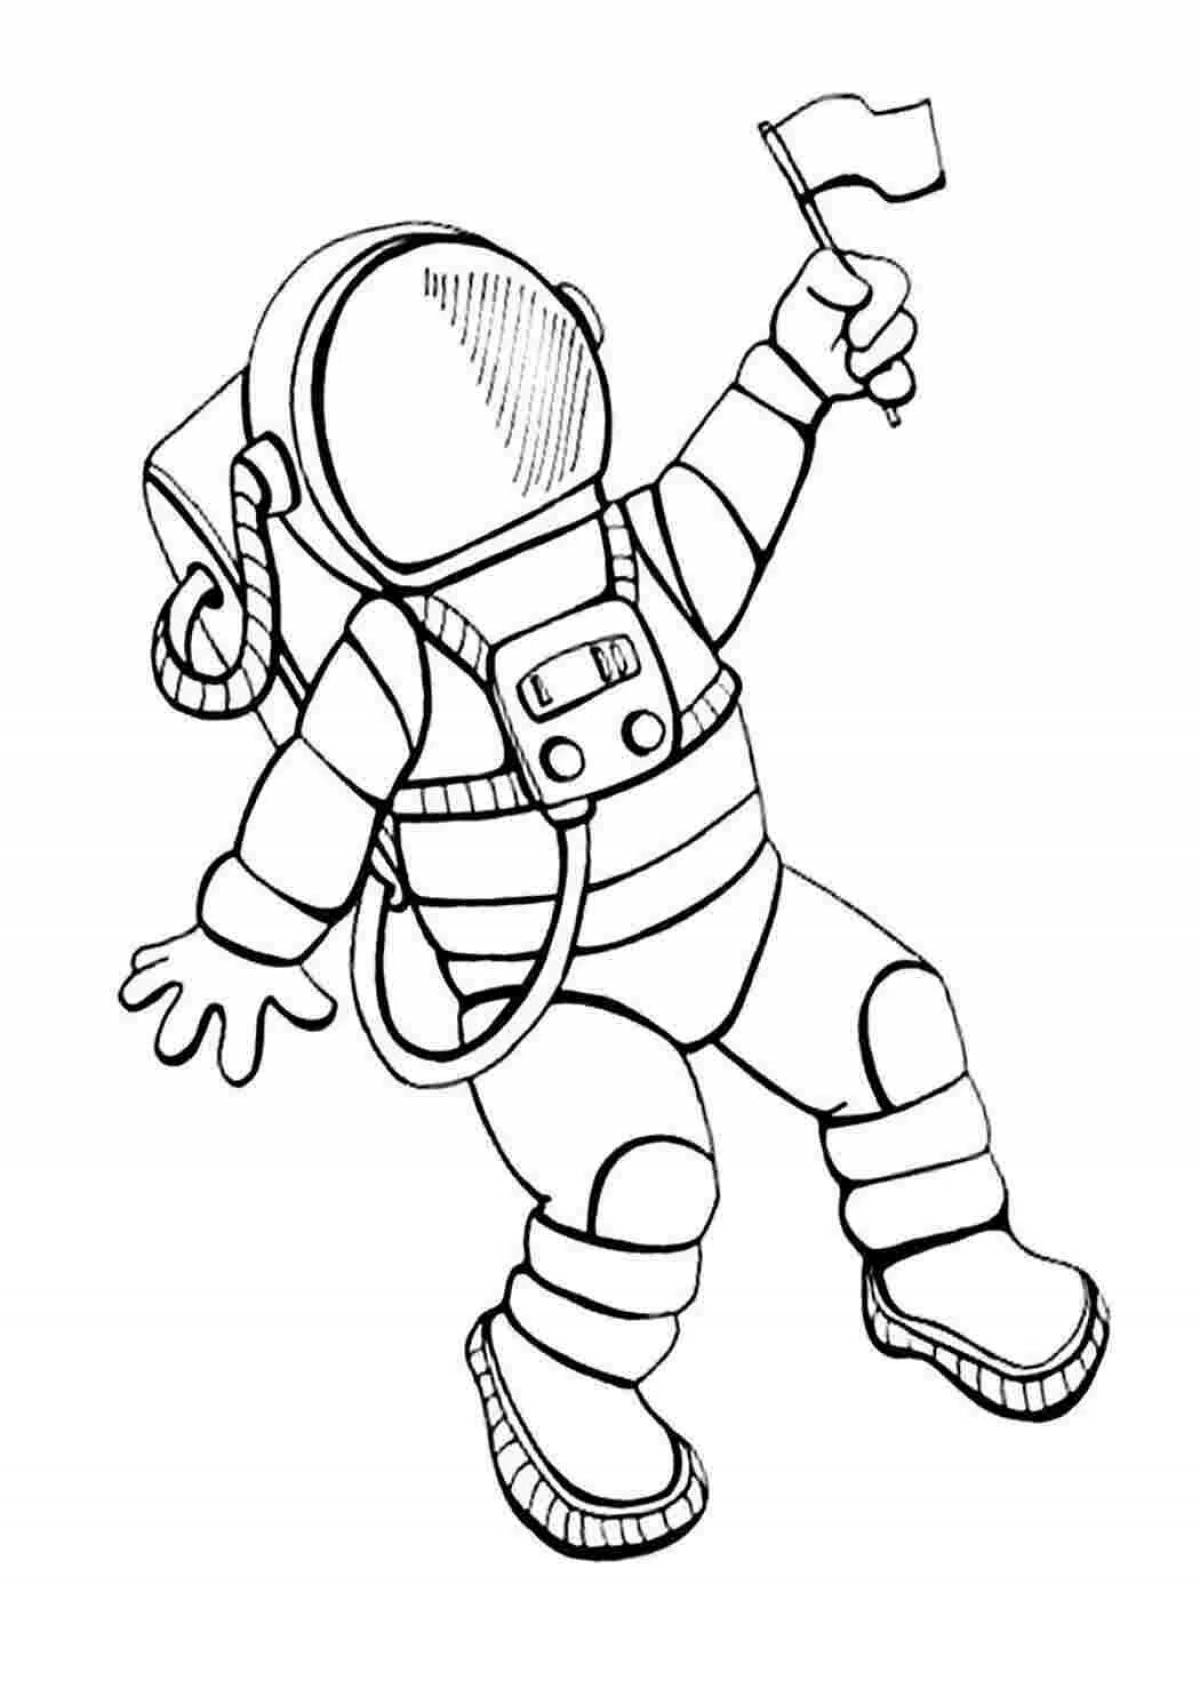 Космонавт шаблон для вырезания распечатать. Космонавт рисунок. Космонавт рисунок для детей. Космонавт раскраска. Космонавт раскраска для детей.